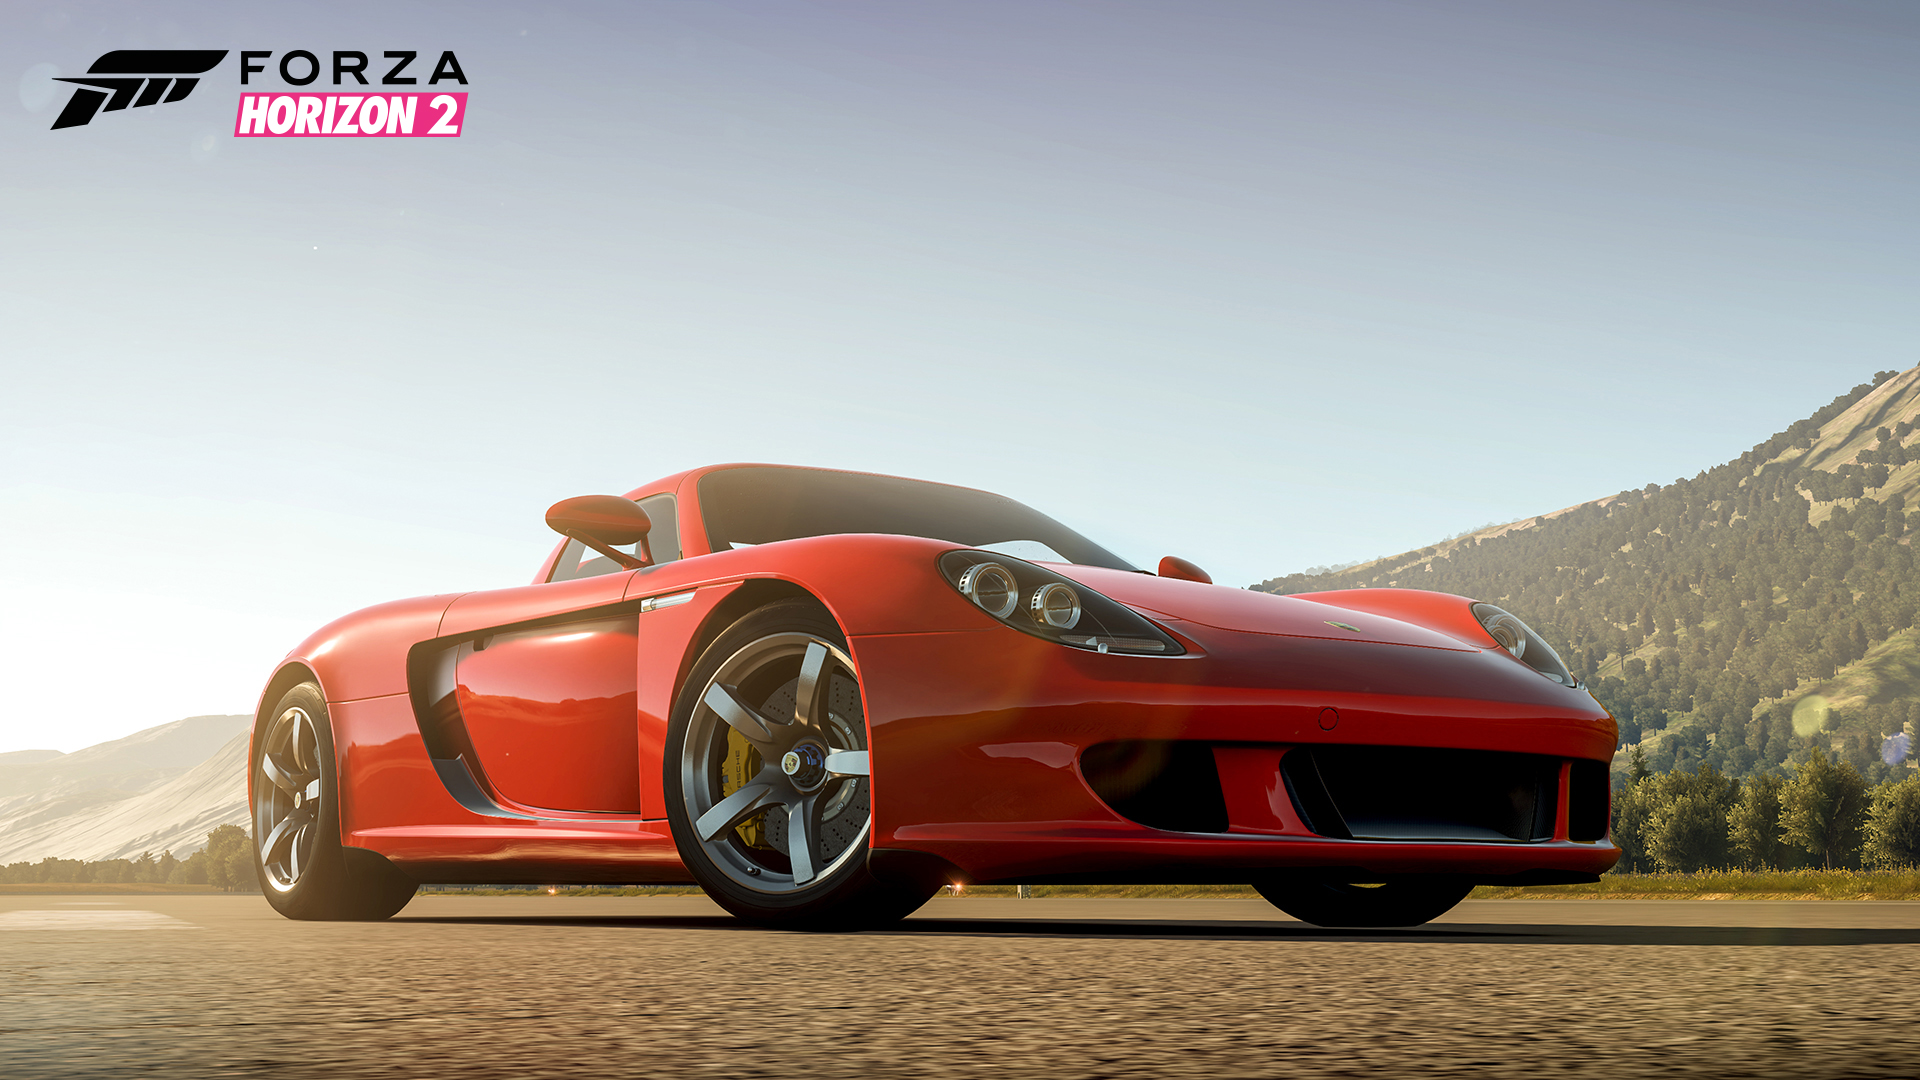 Descarga gratuita de fondo de pantalla para móvil de Forza Horizon 2, Fuerza, Videojuego.